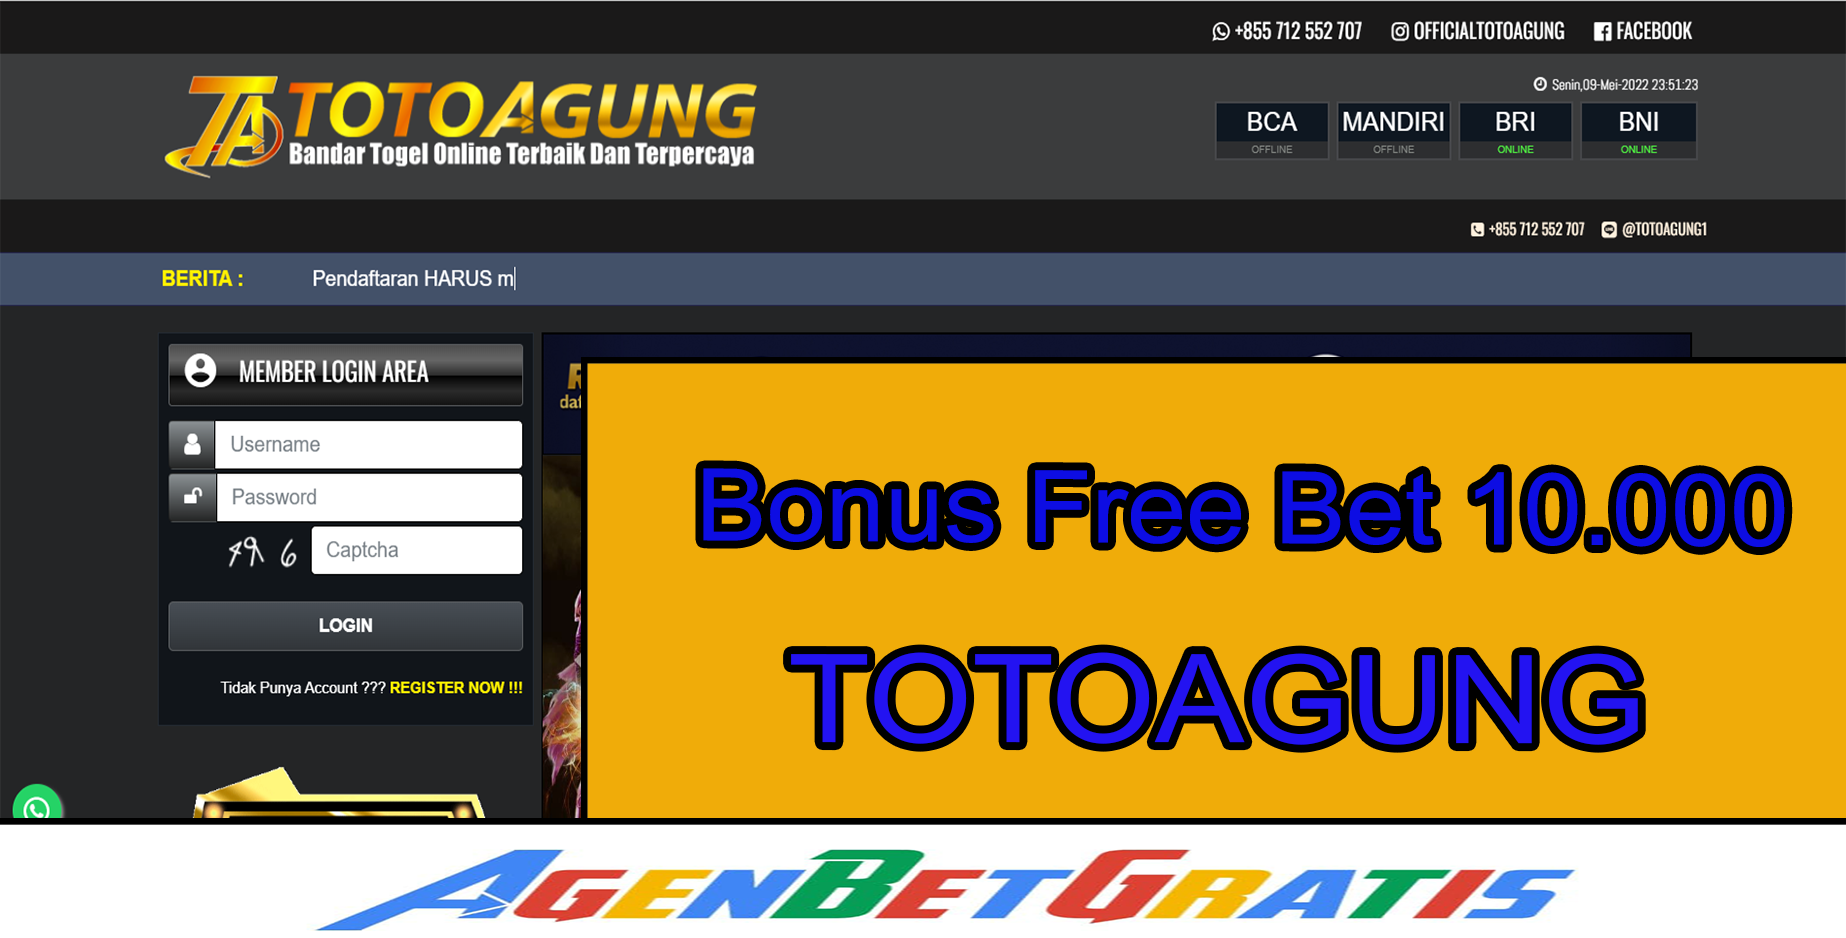 TOTOAGUNG - Bonus FreeBet 10.000